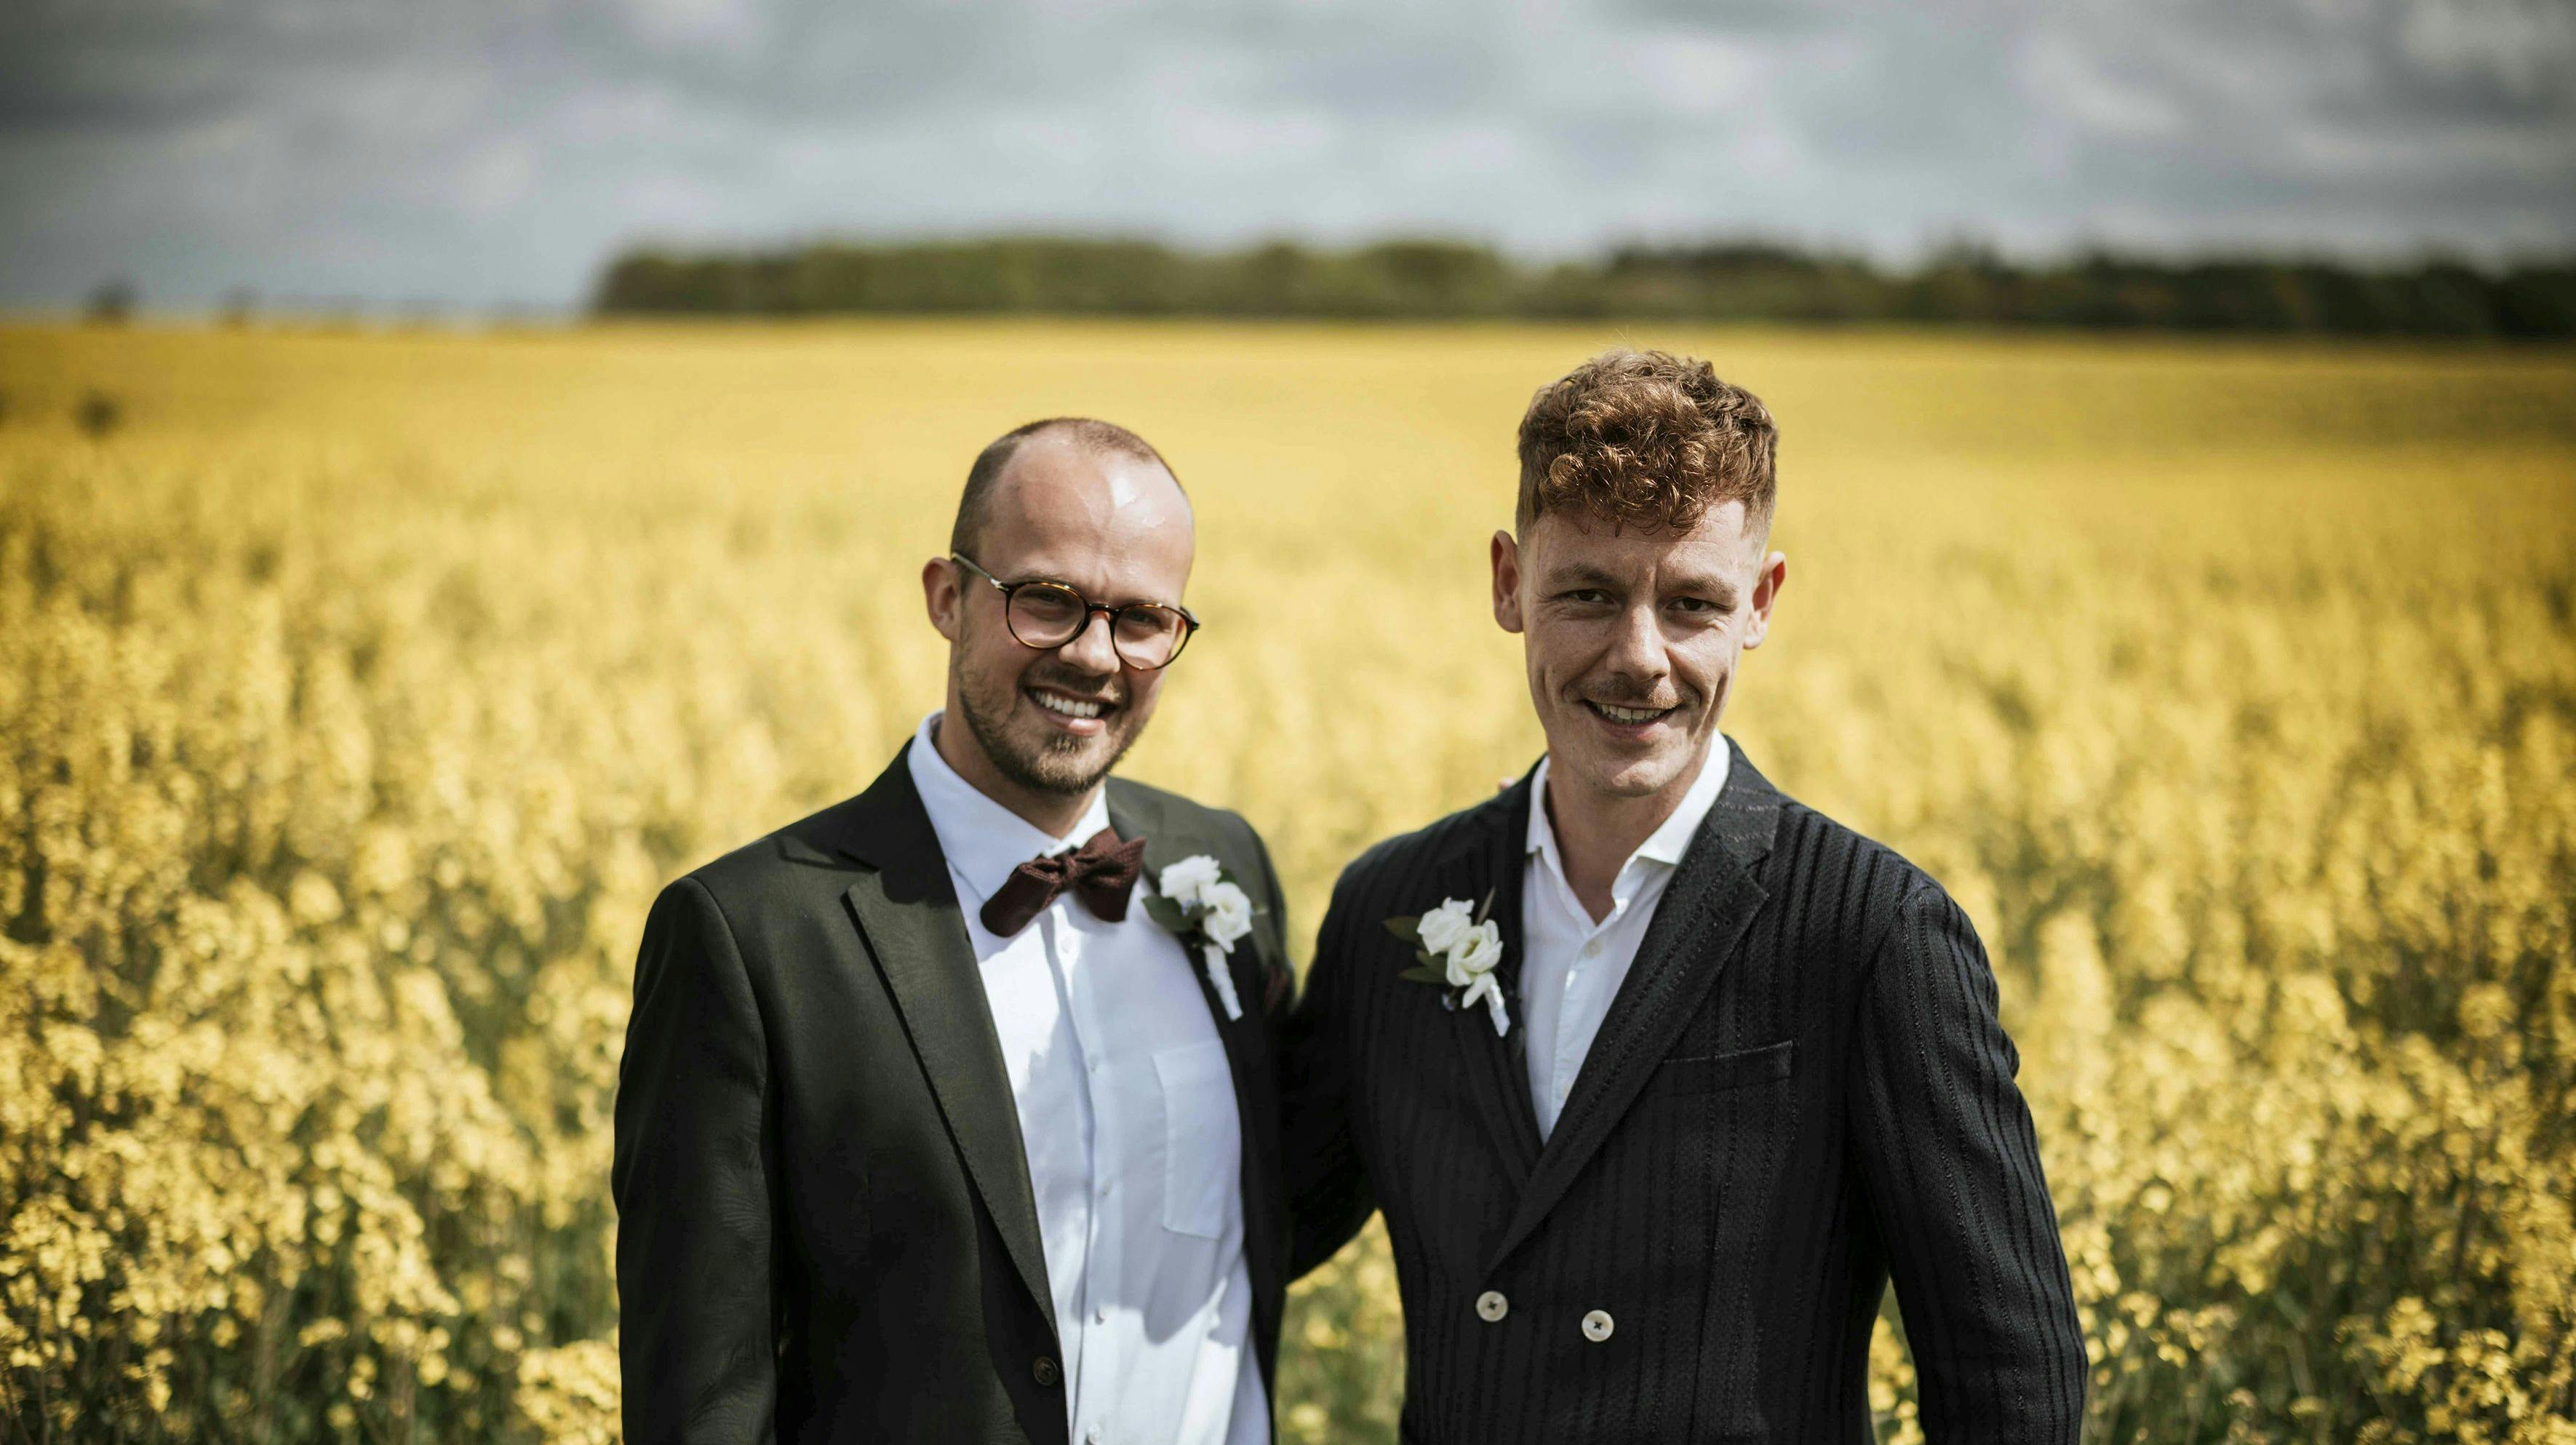 I “Gift ved første blik” bliver Sebastian smedet sammen med Anders Reinholdt Jonssen, 35.